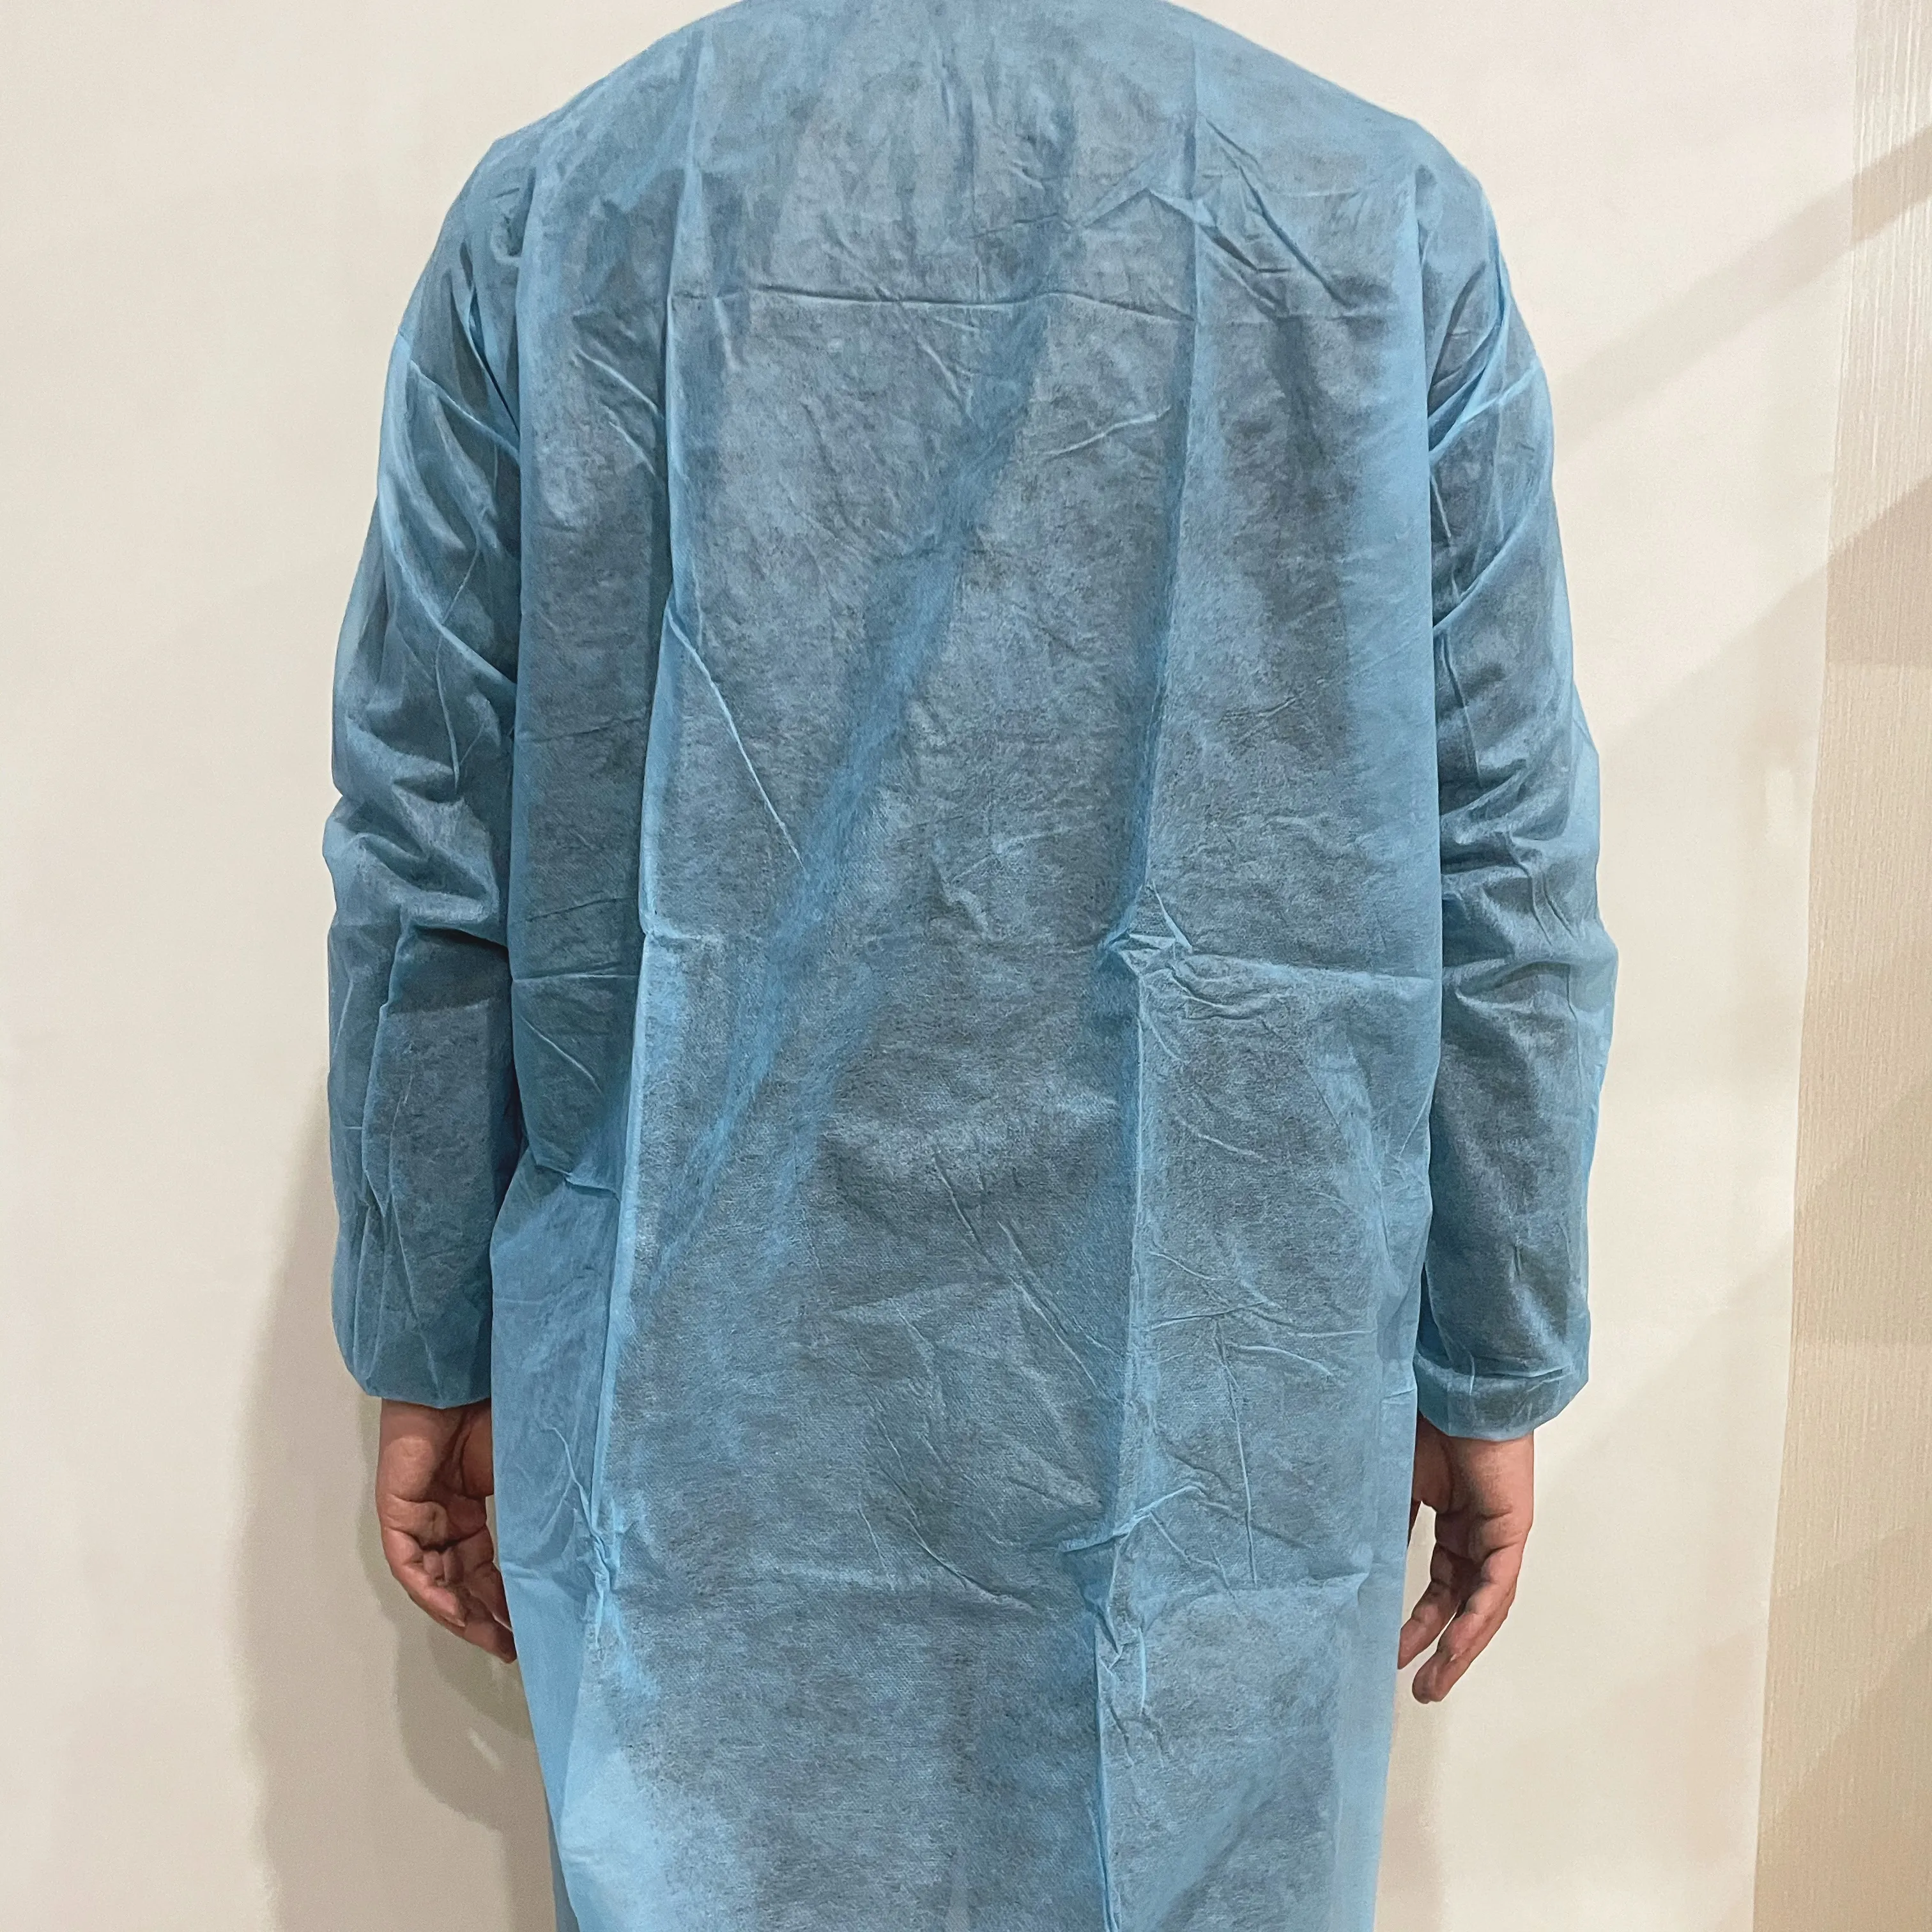 PP Lab Mantel 25 g blau Lab Mantel mit Knopf keine Tasche XL zwei Stück verkauf